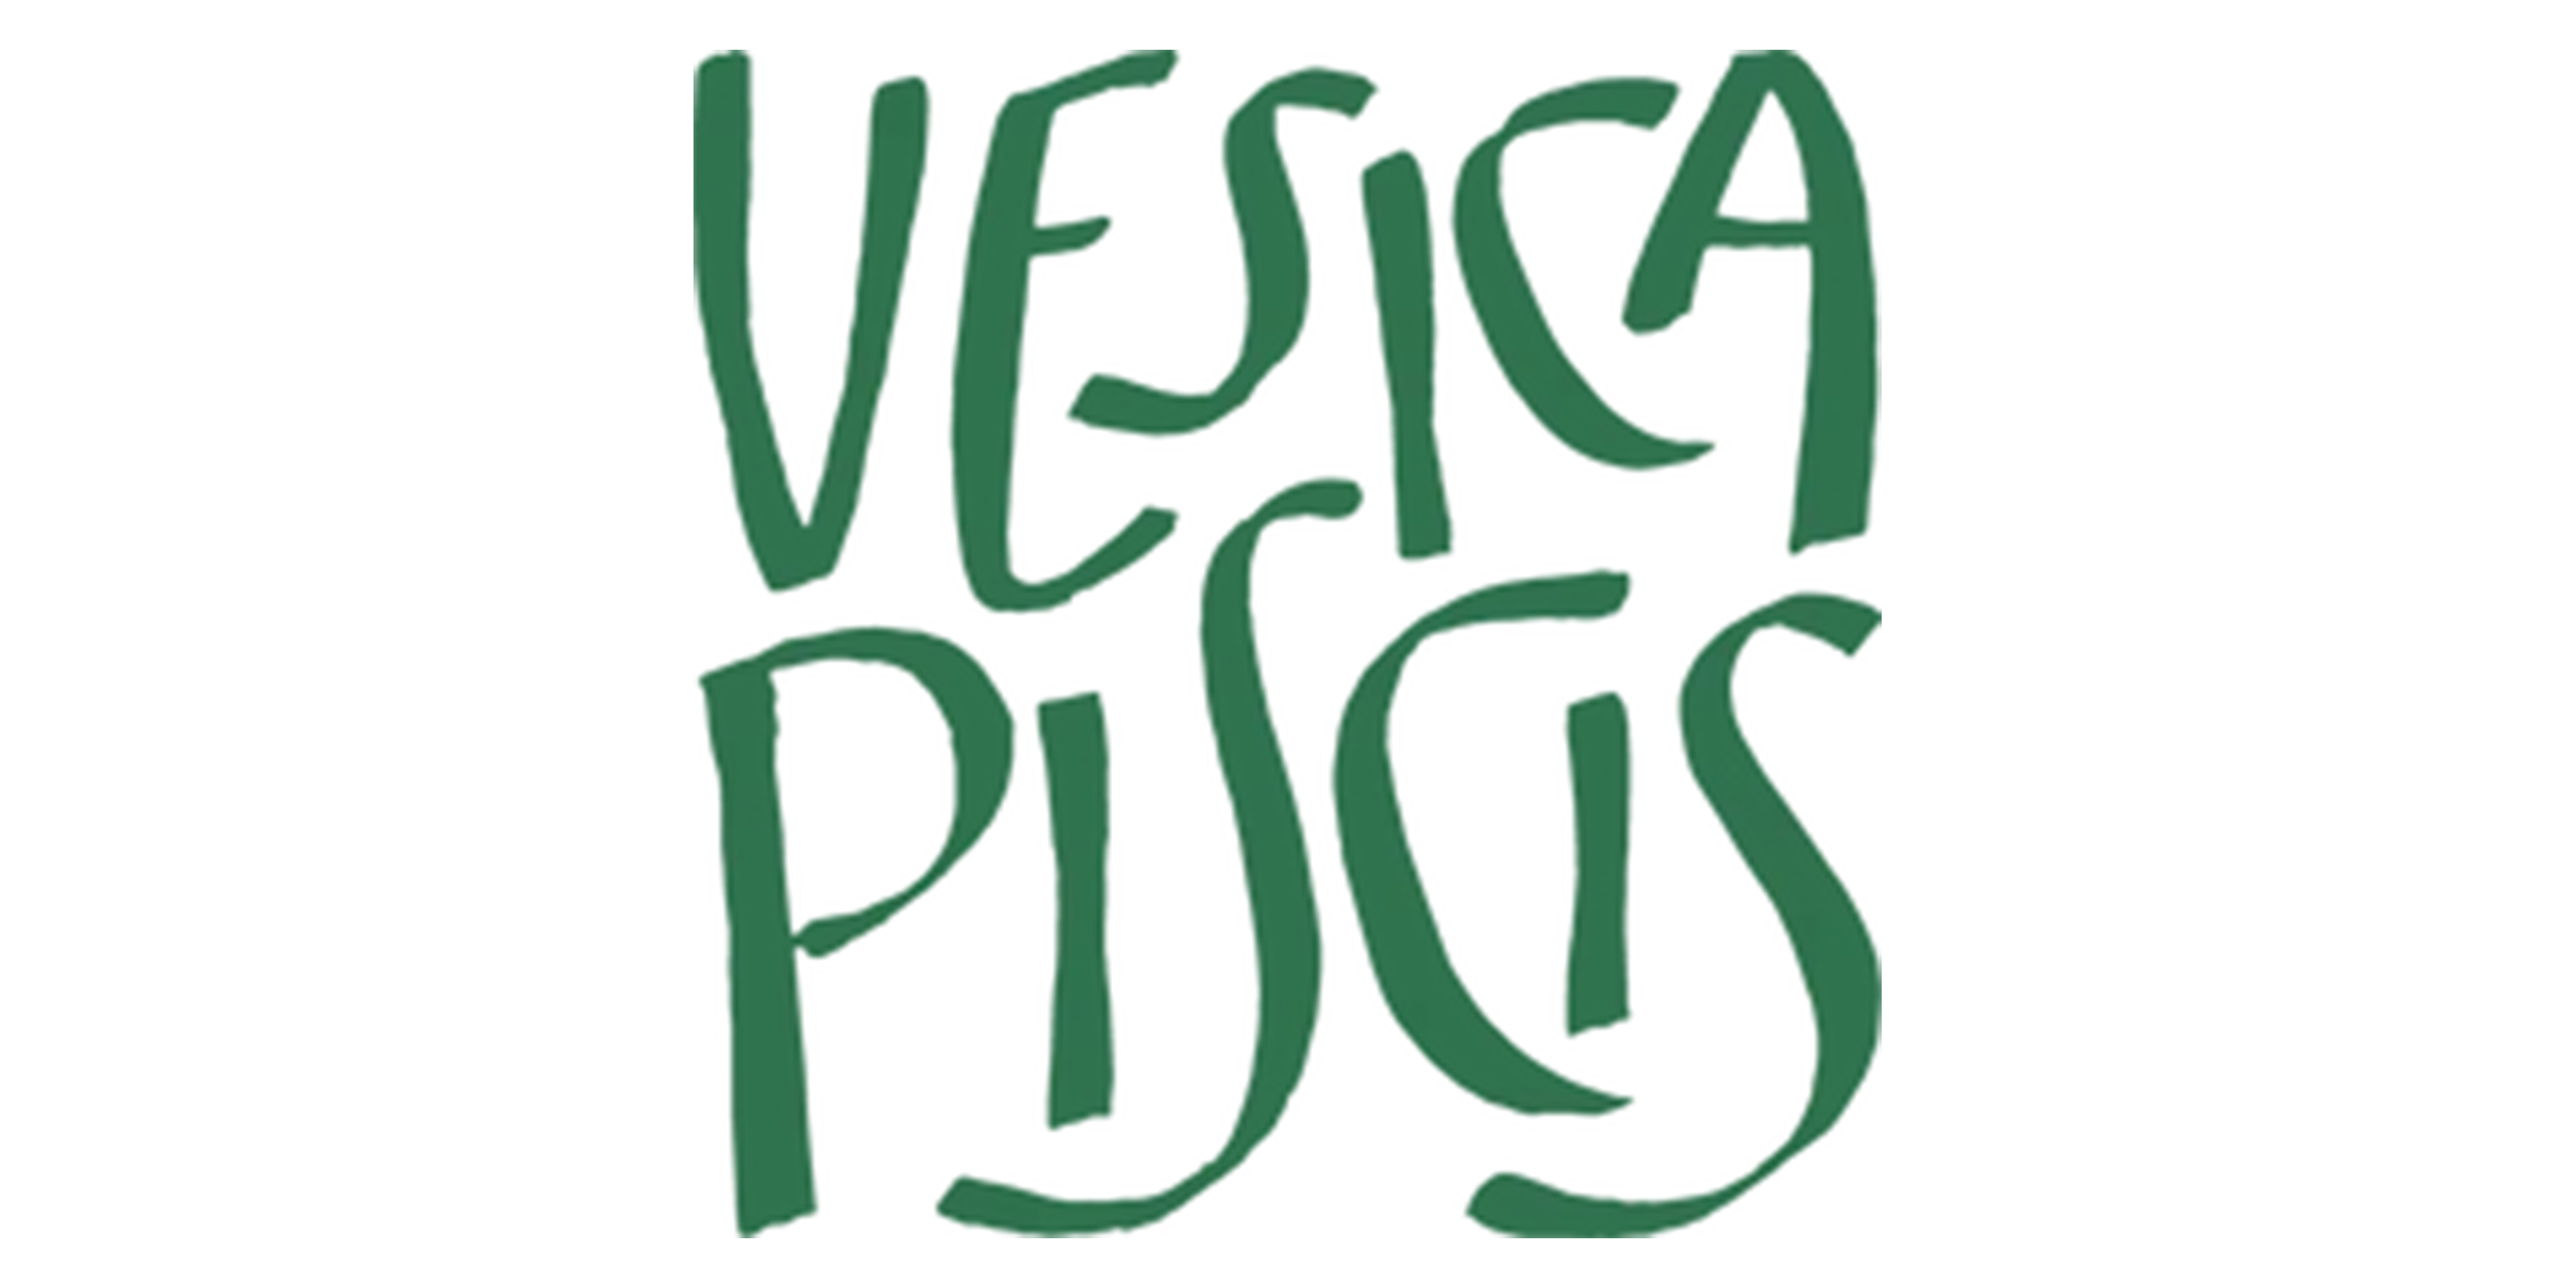 Vesica Piscis